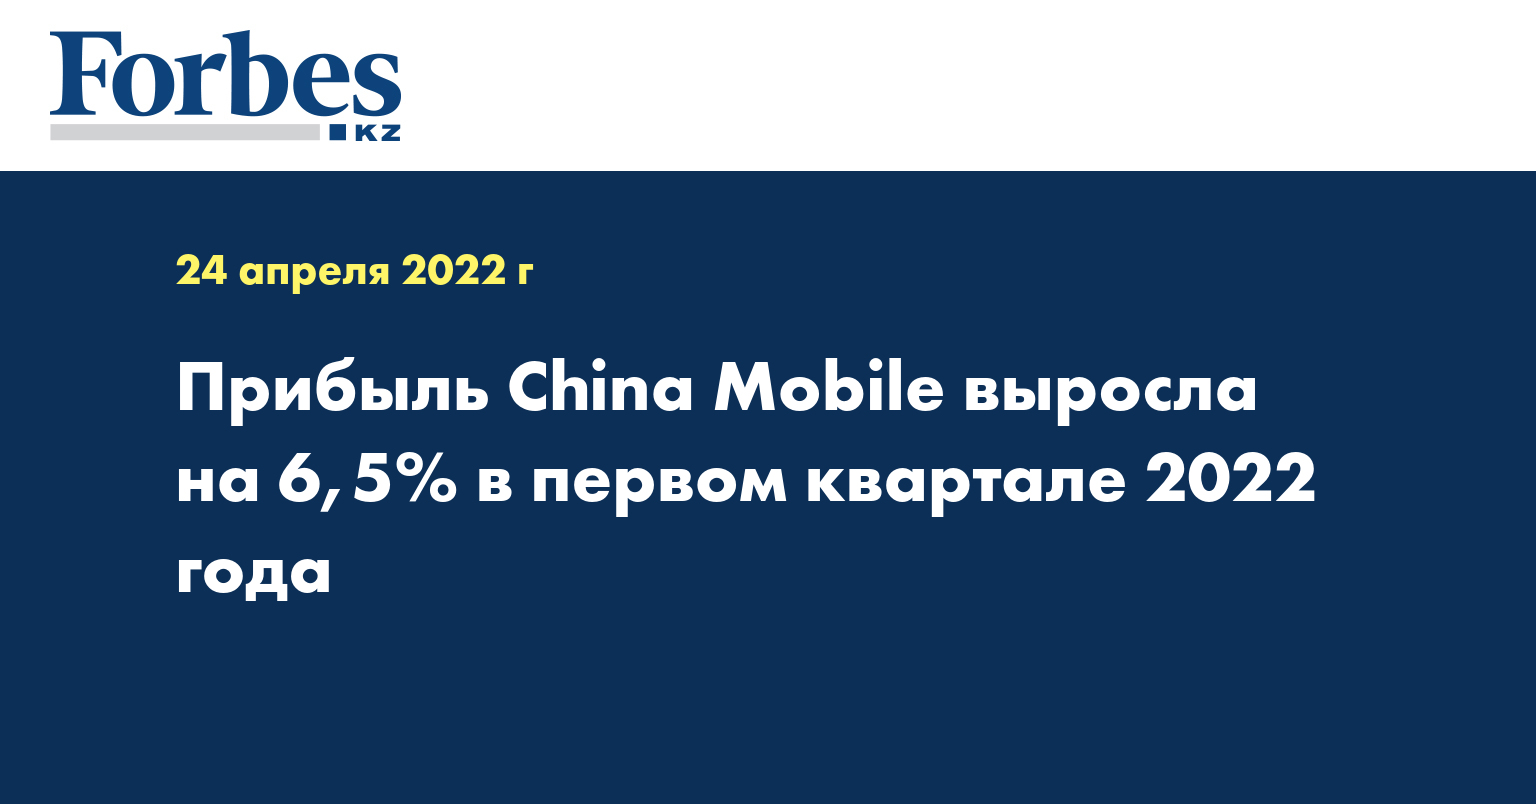 Прибыль China Mobile выросла на 6,5% в первом квартале 2022 года